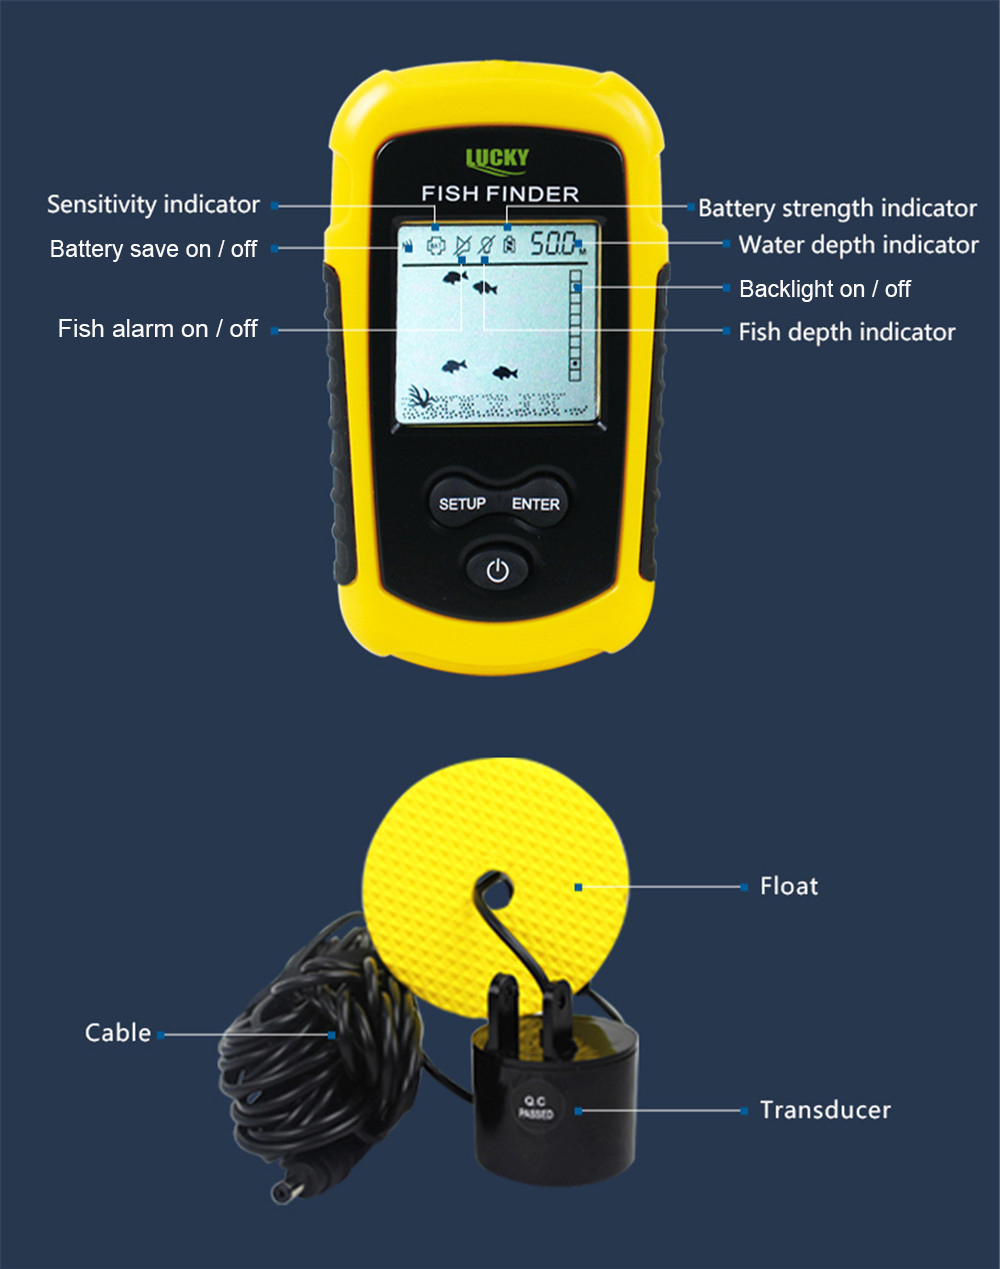 FF1108 - 1 Fish Finder Sonar Sensor Transducer Detector for Fishing